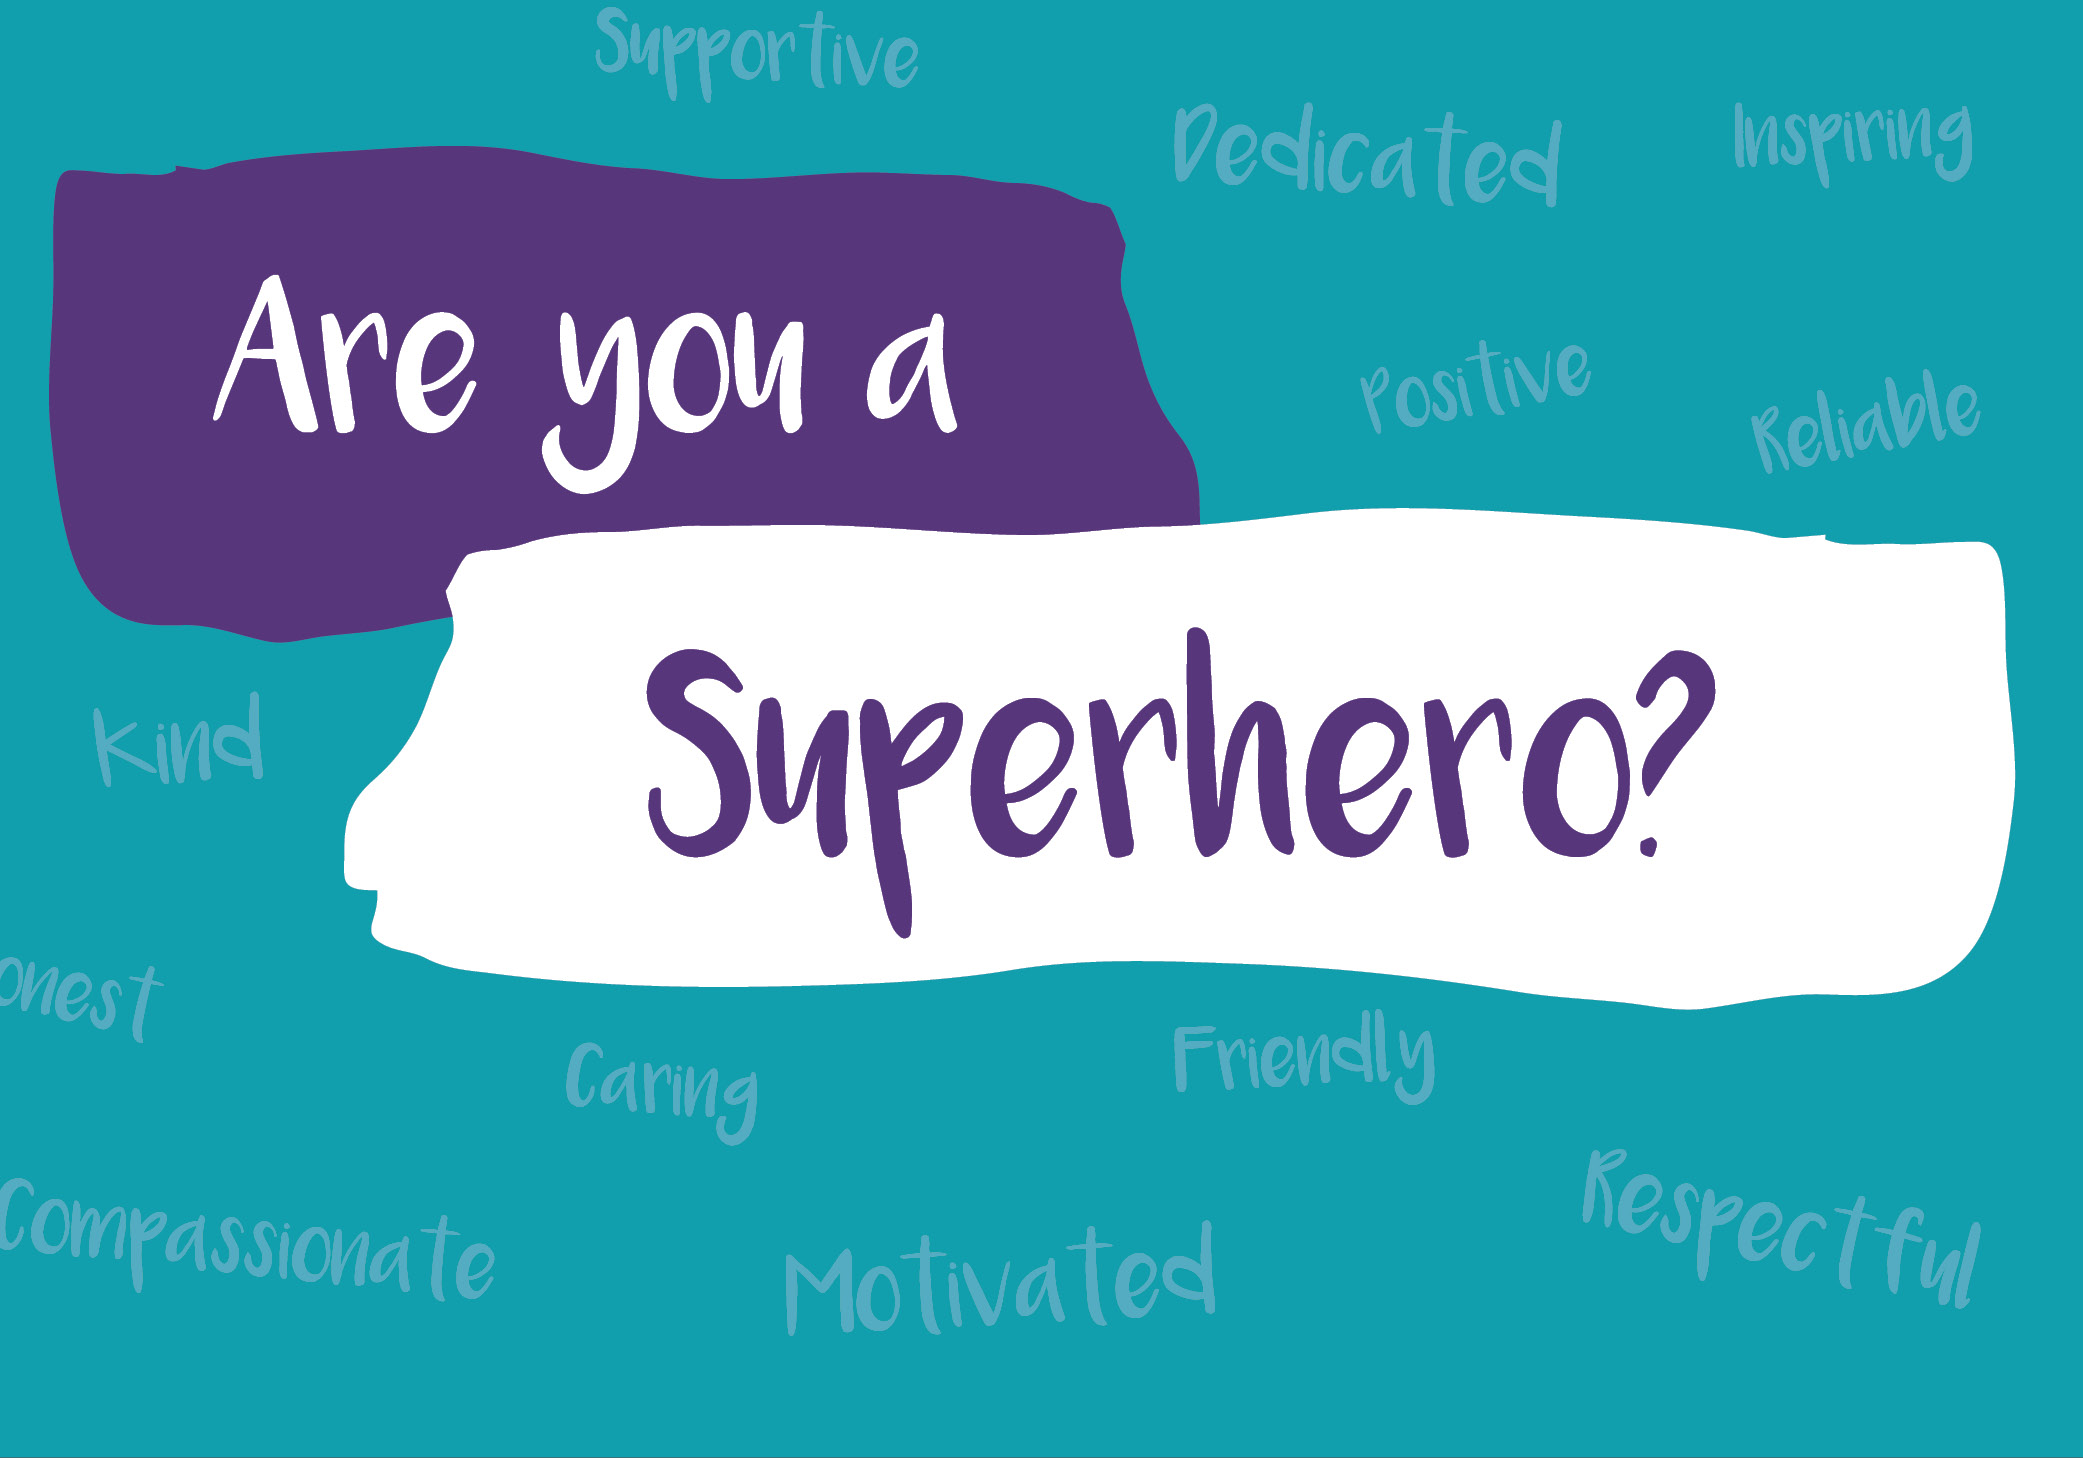 Are you a social care superhero?